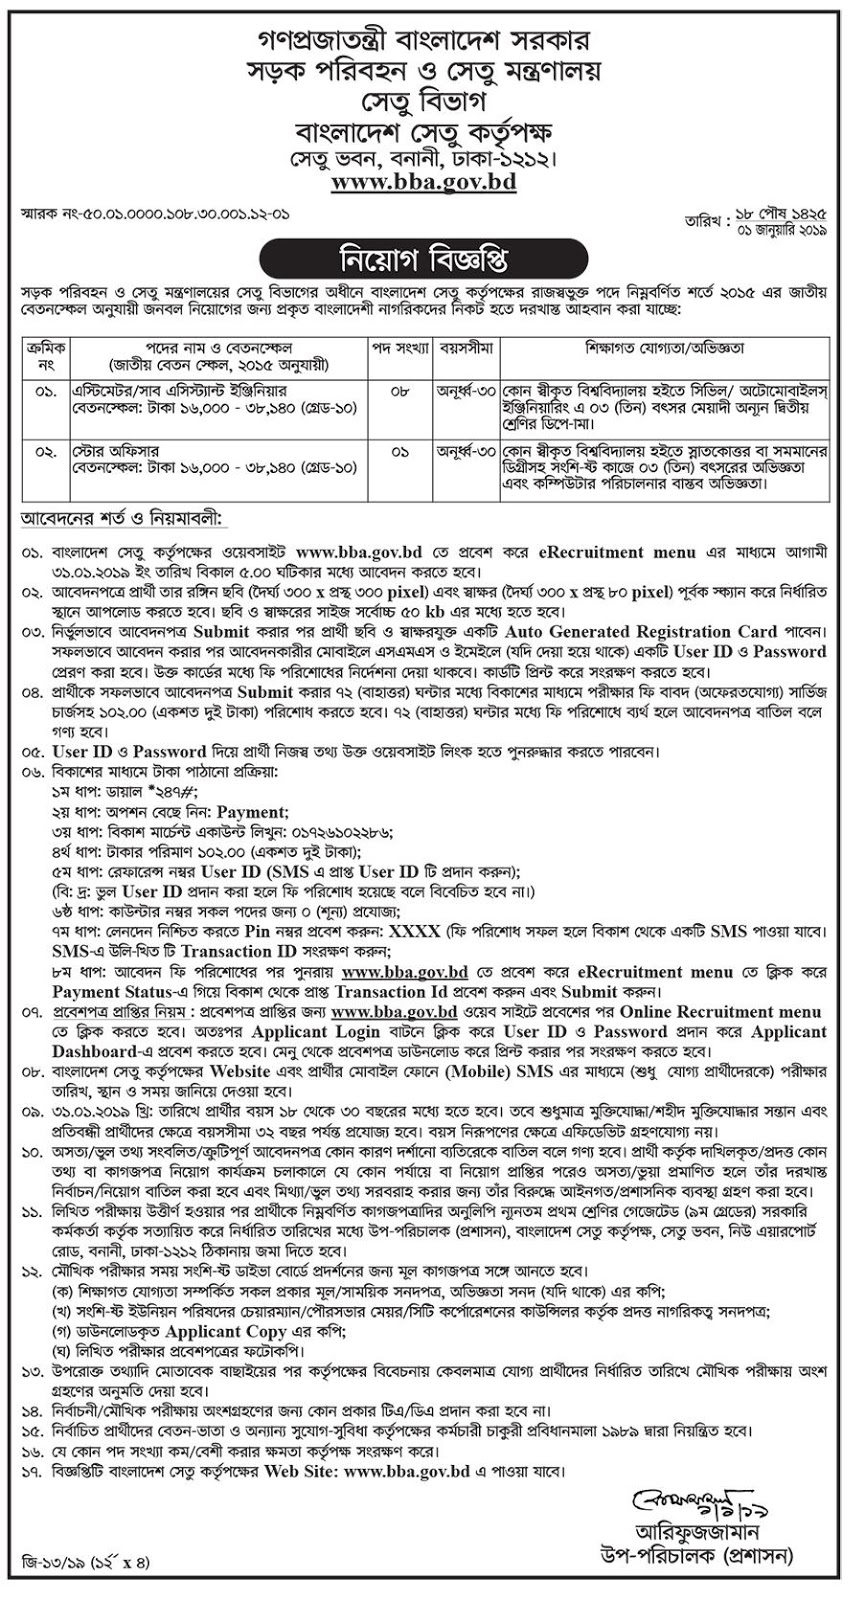 Bangladesh Bridge Authority (BBA) Job Circular 2019